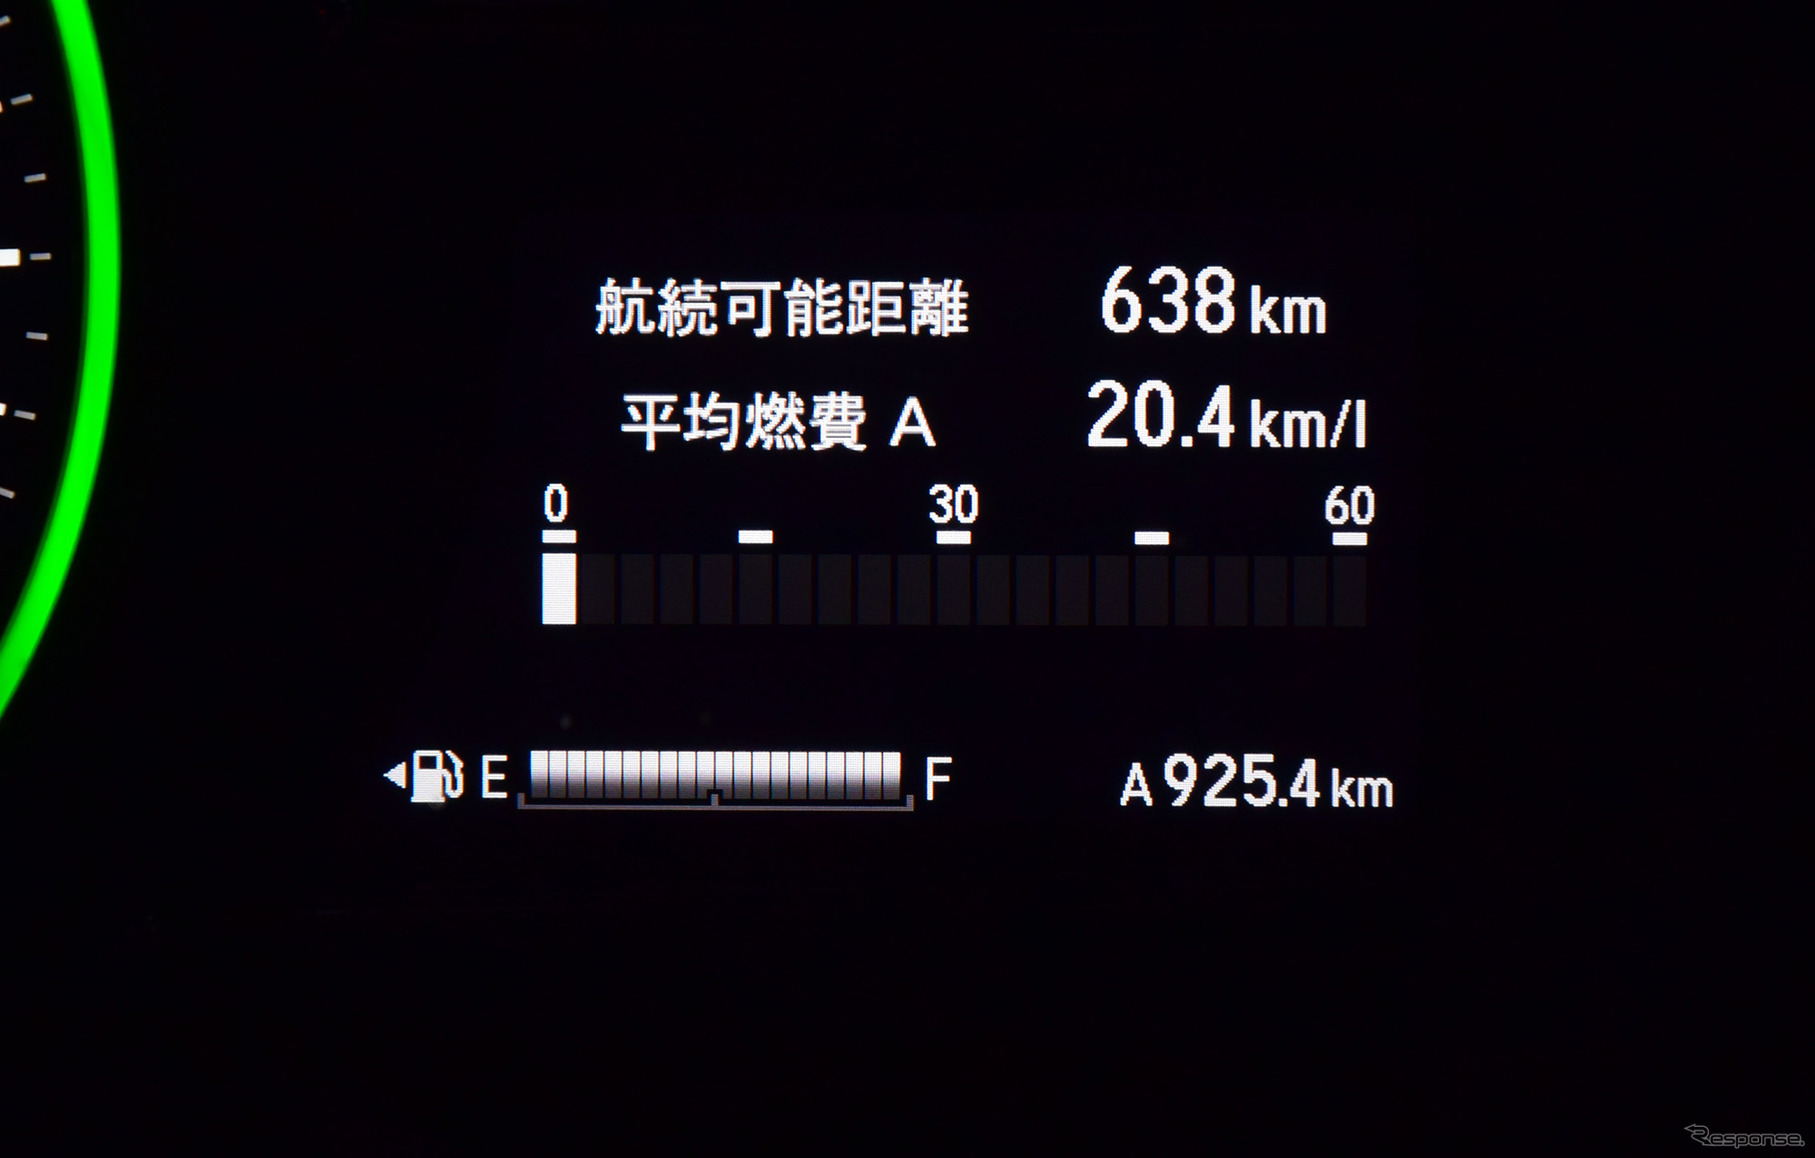 総走行距離925.4km。